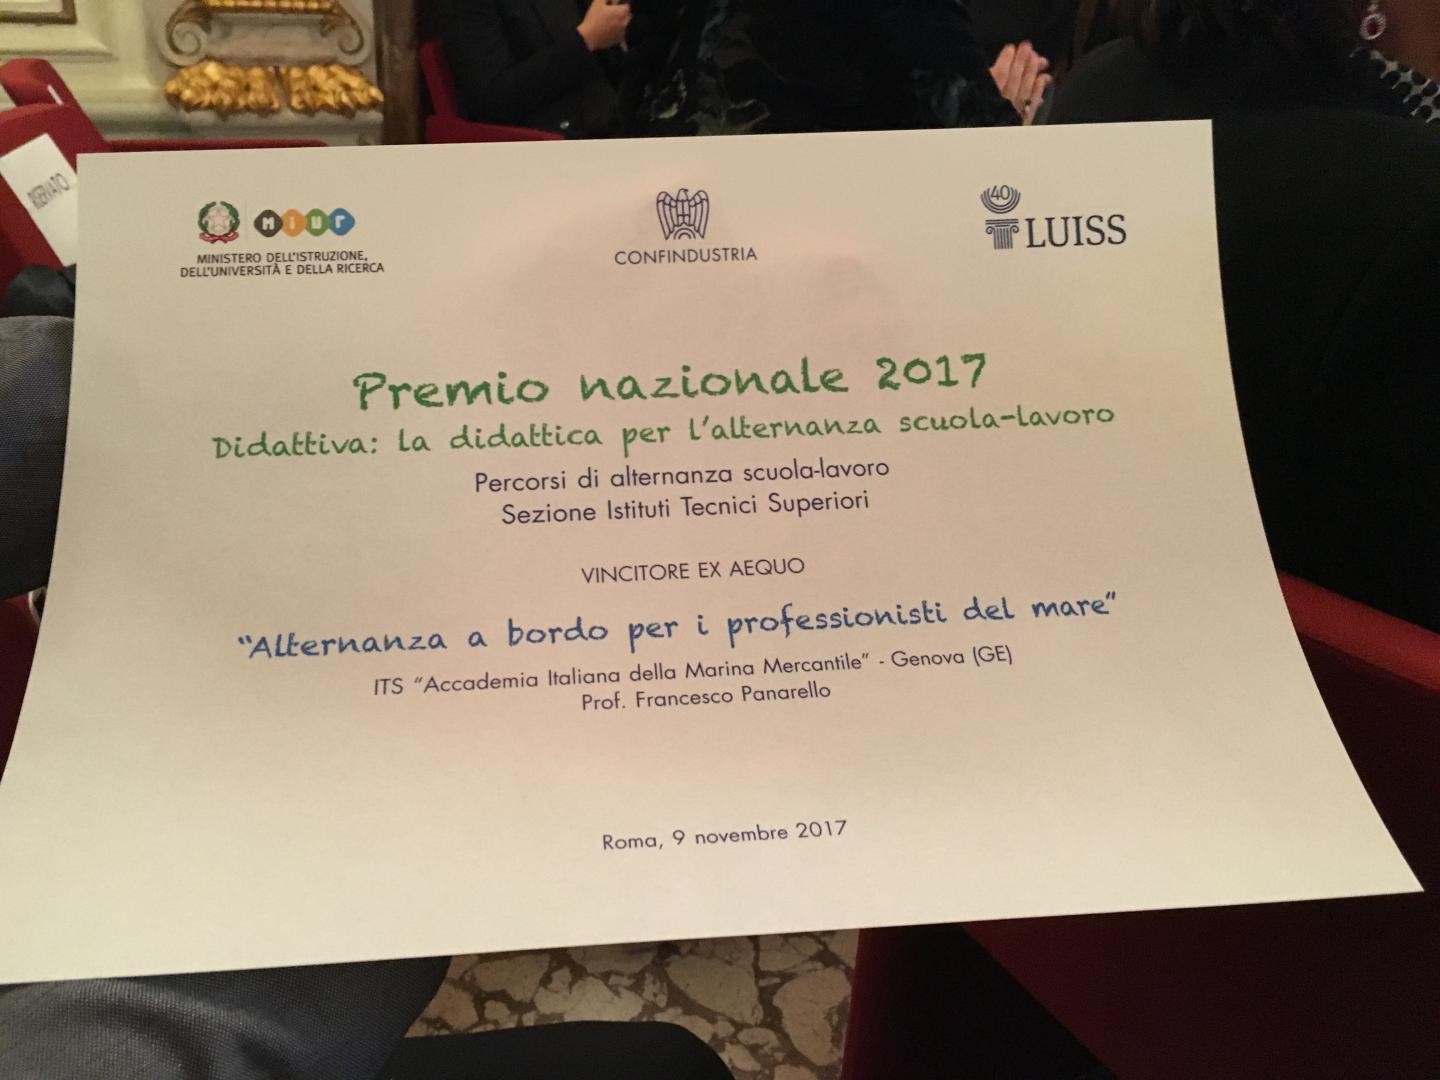 Accademia Italiana della Marina Mercantile vince il premio nazionale'alternanza scuola-lavoro - its'